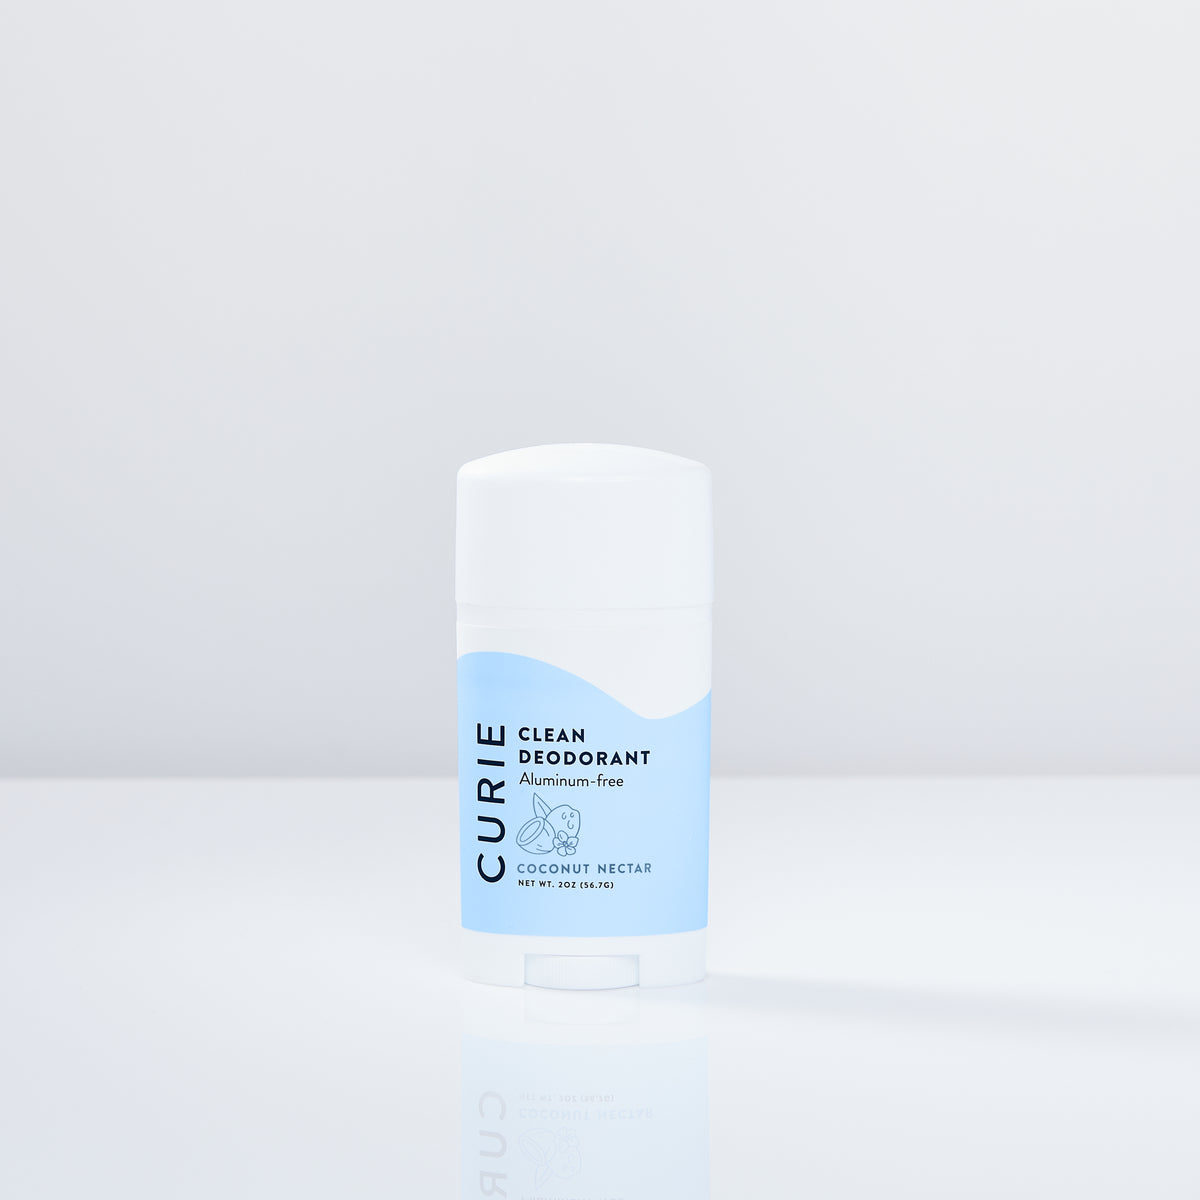 Clean, Effective Aluminum-Free Deodorant—Curie